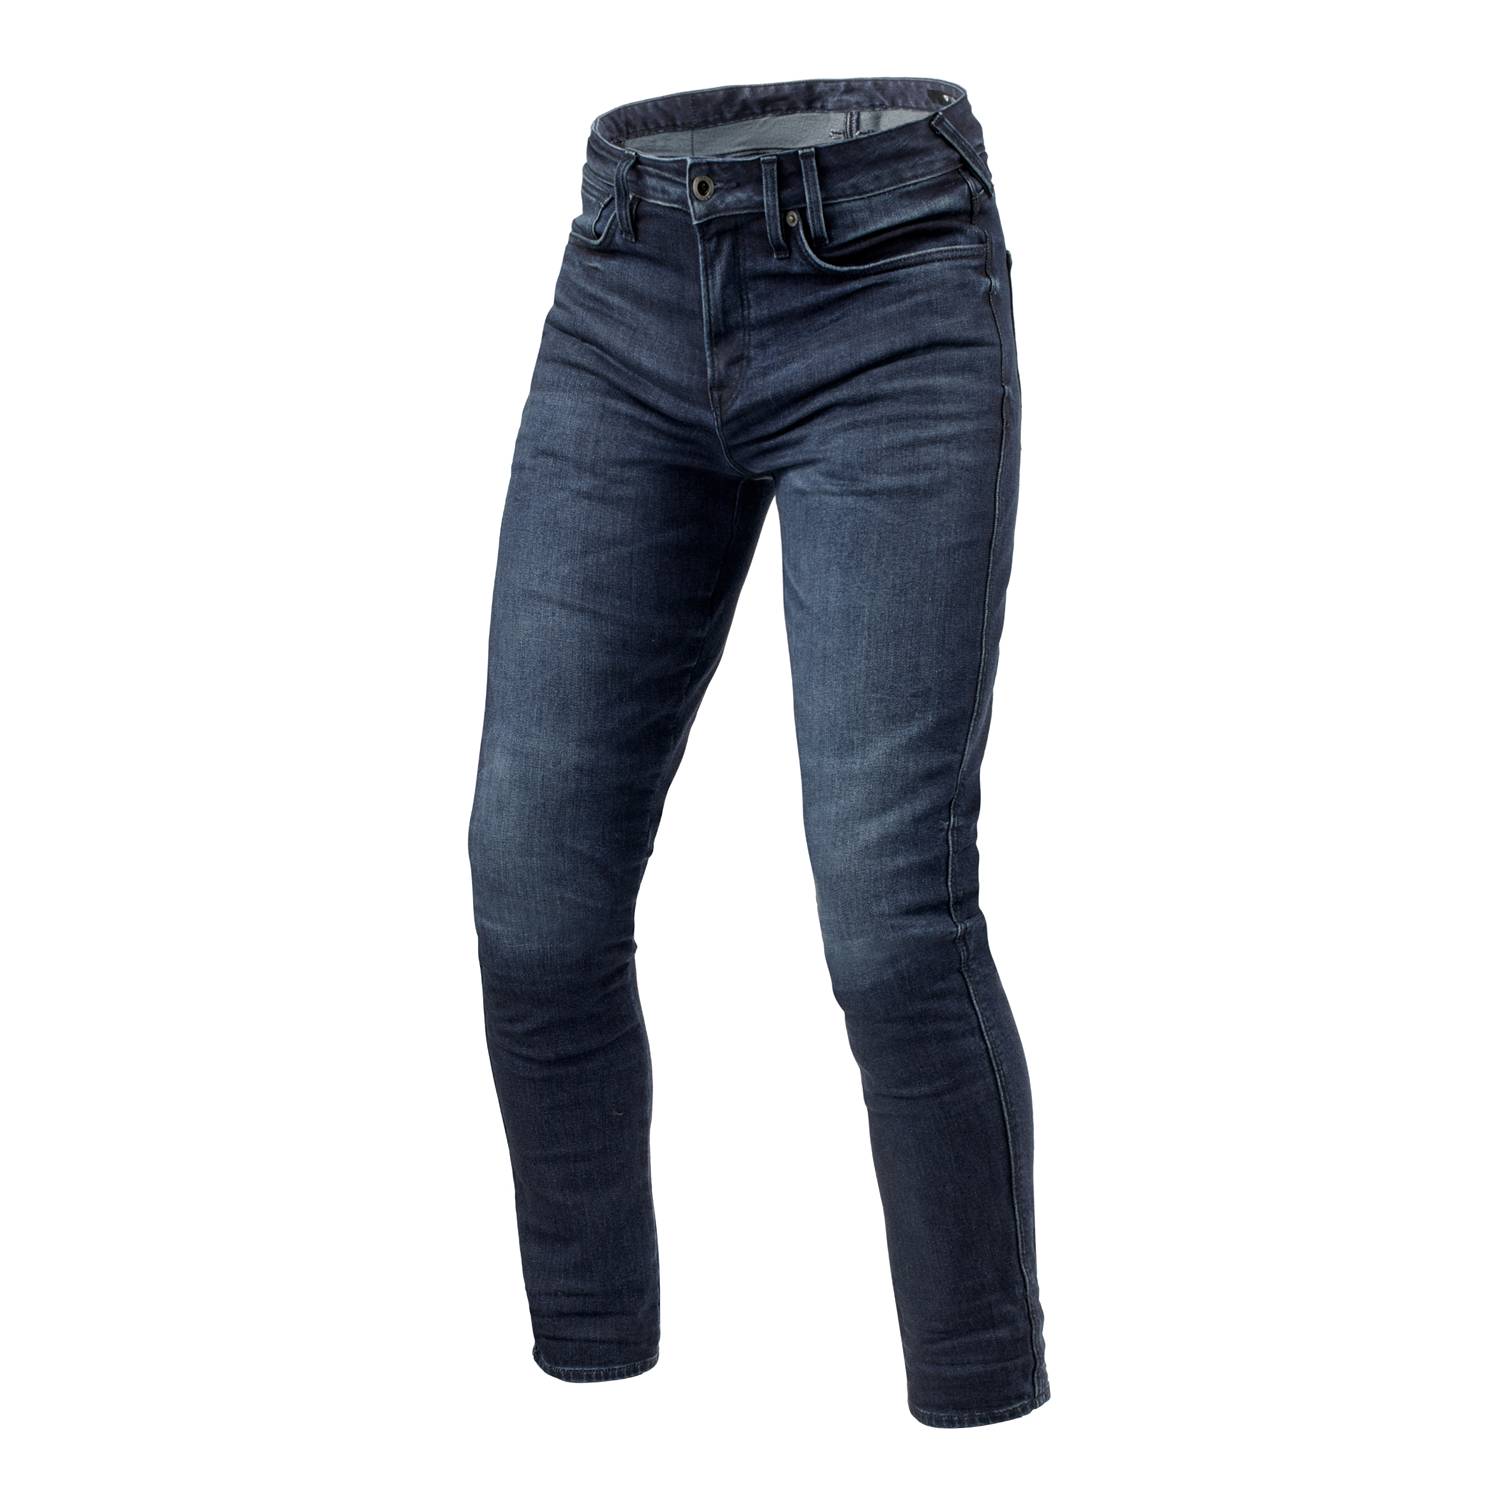 Image of REV'IT! Jeans Carlin SK Dark Blue Used L36 Motorcycle Jeans Size L36/W30 EN